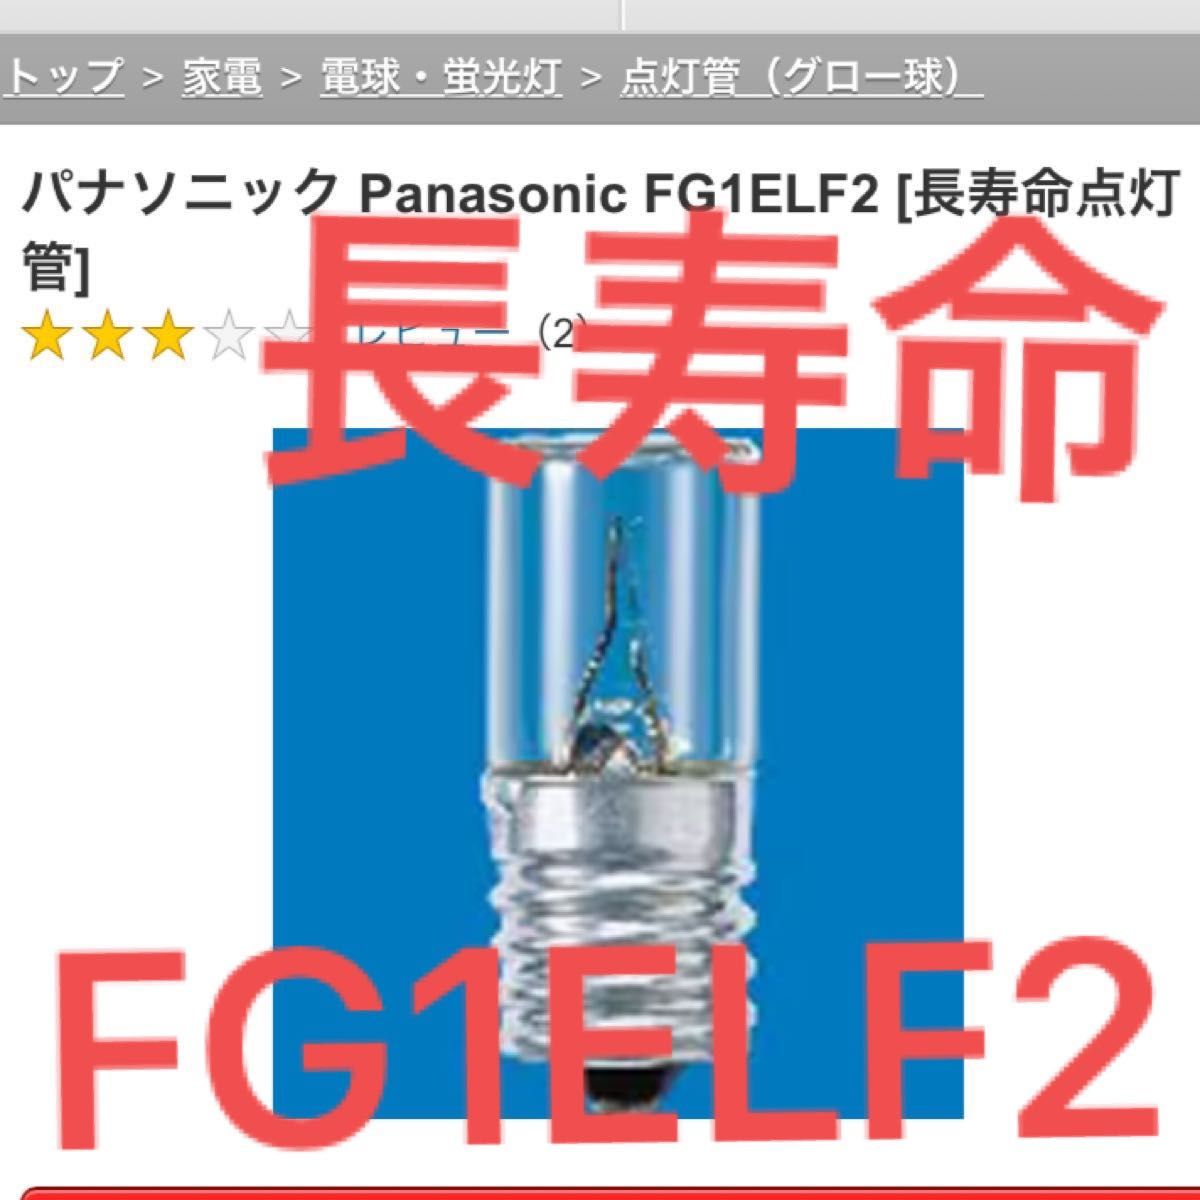 優れた品質 パナソニック 長寿命点灯管 FG7ELF2